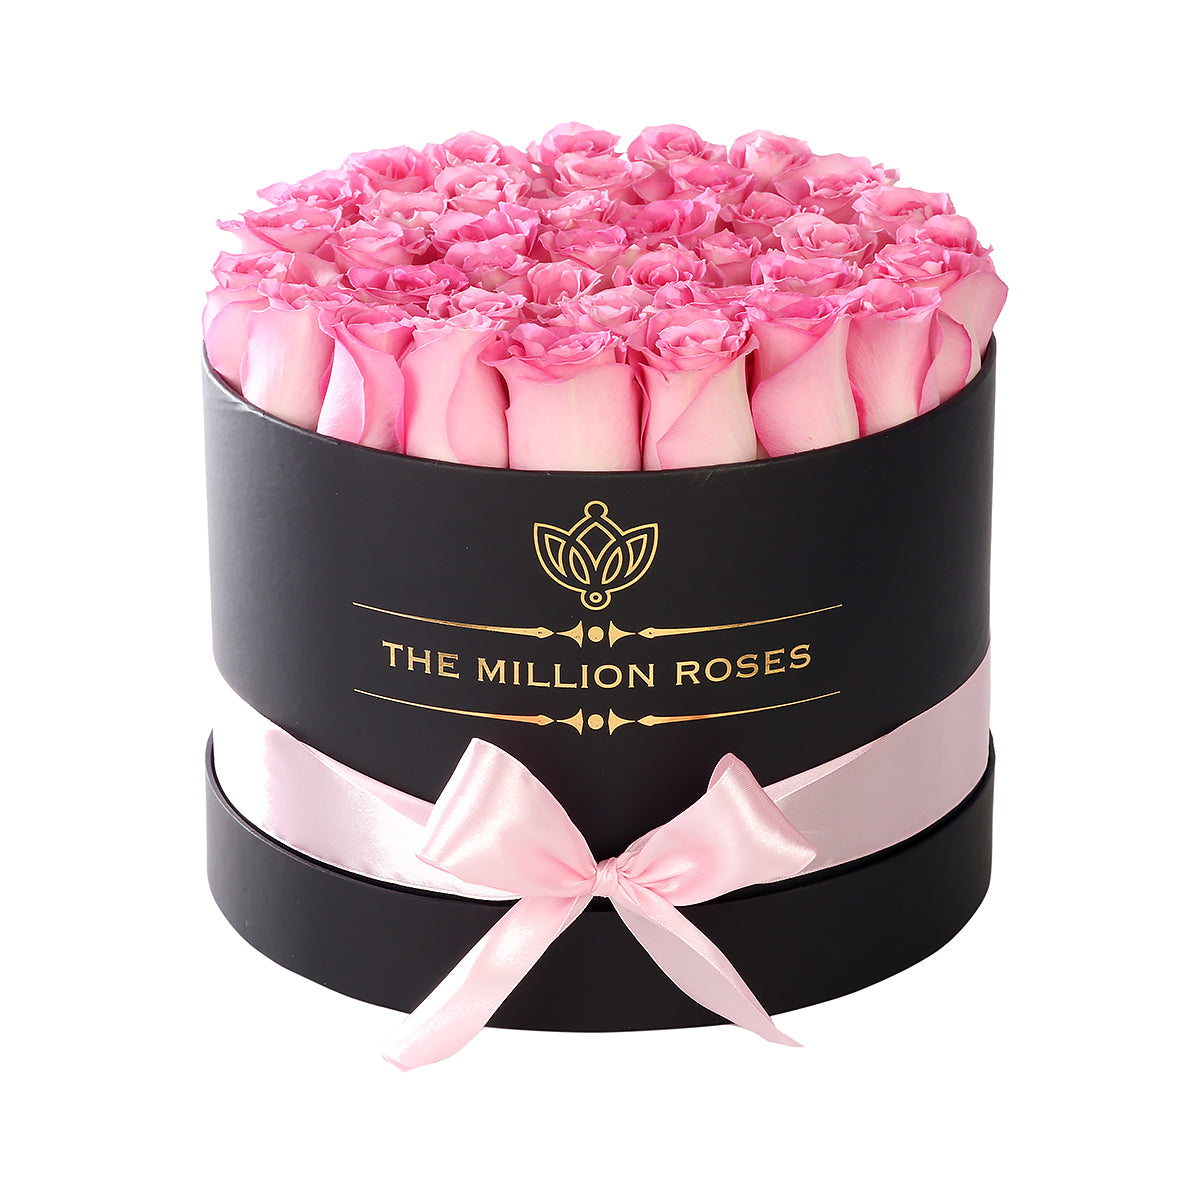 Trandafiri naturali roz in cutie medie